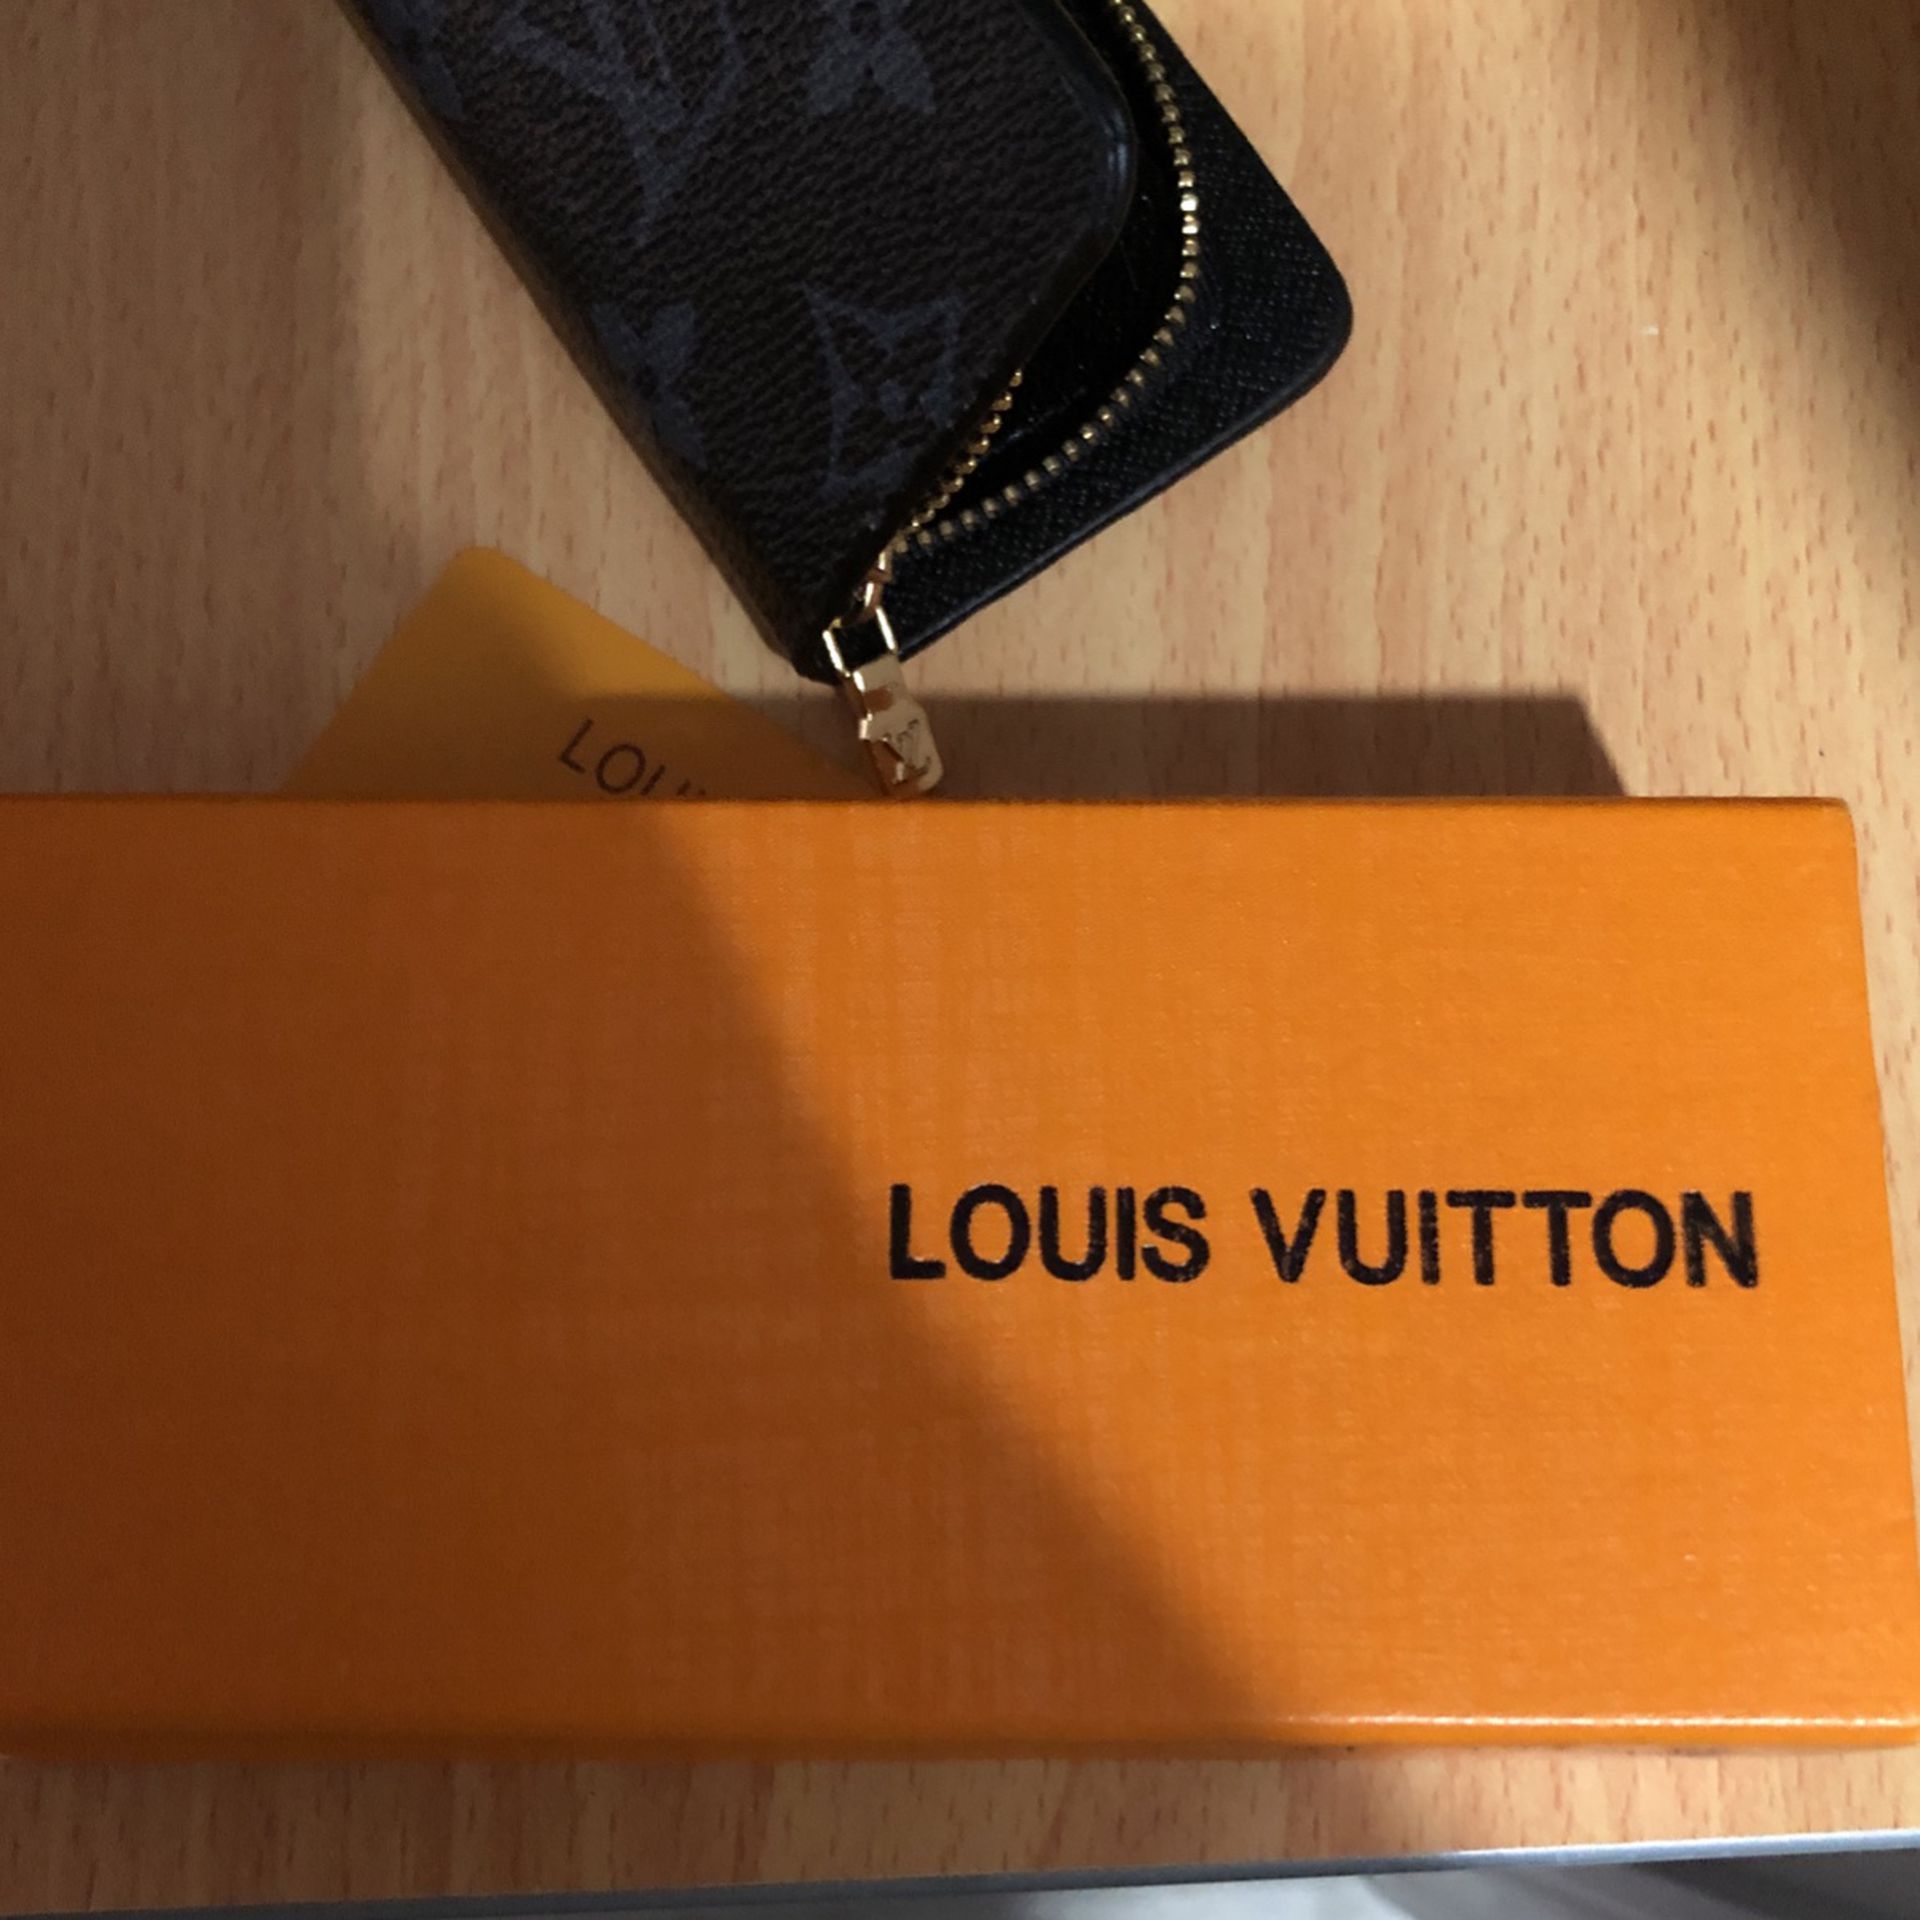 Louis Vuitton Key Holder for Sale in Marrero, LA - OfferUp